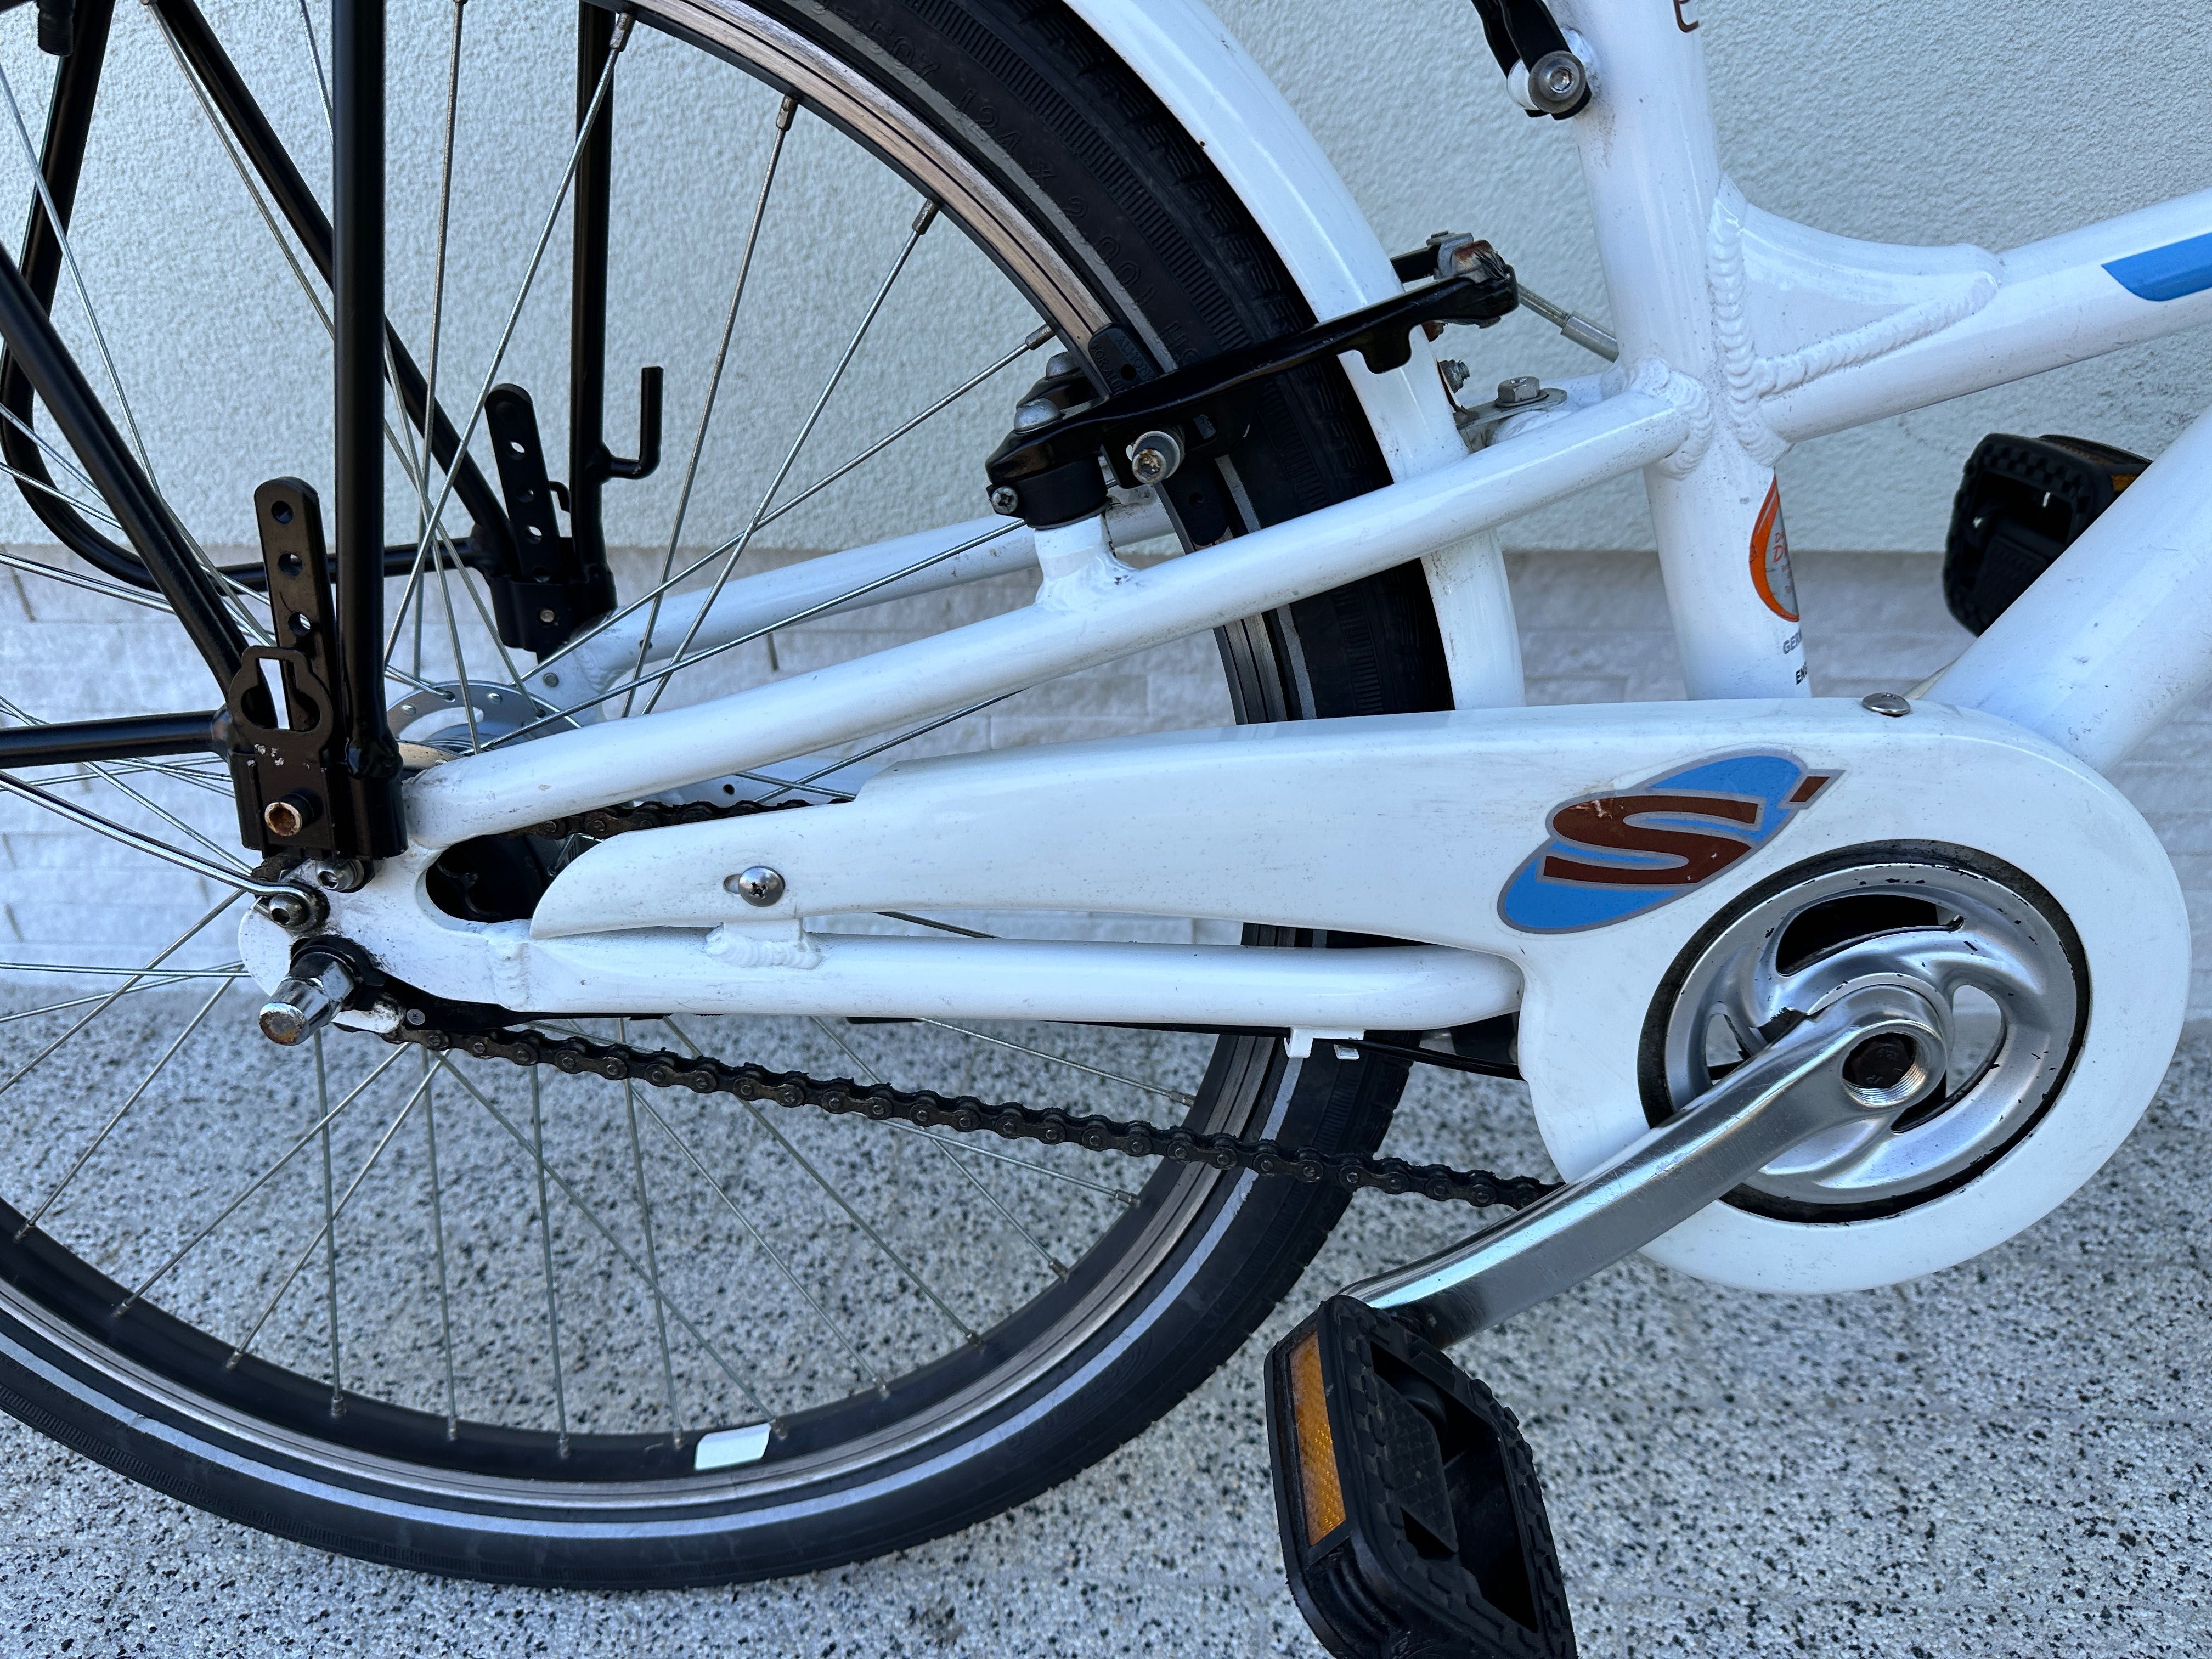 Rower SCOOLBIKE - koła 24, aluminiowy, Nexus 7b, kontra, prądnica